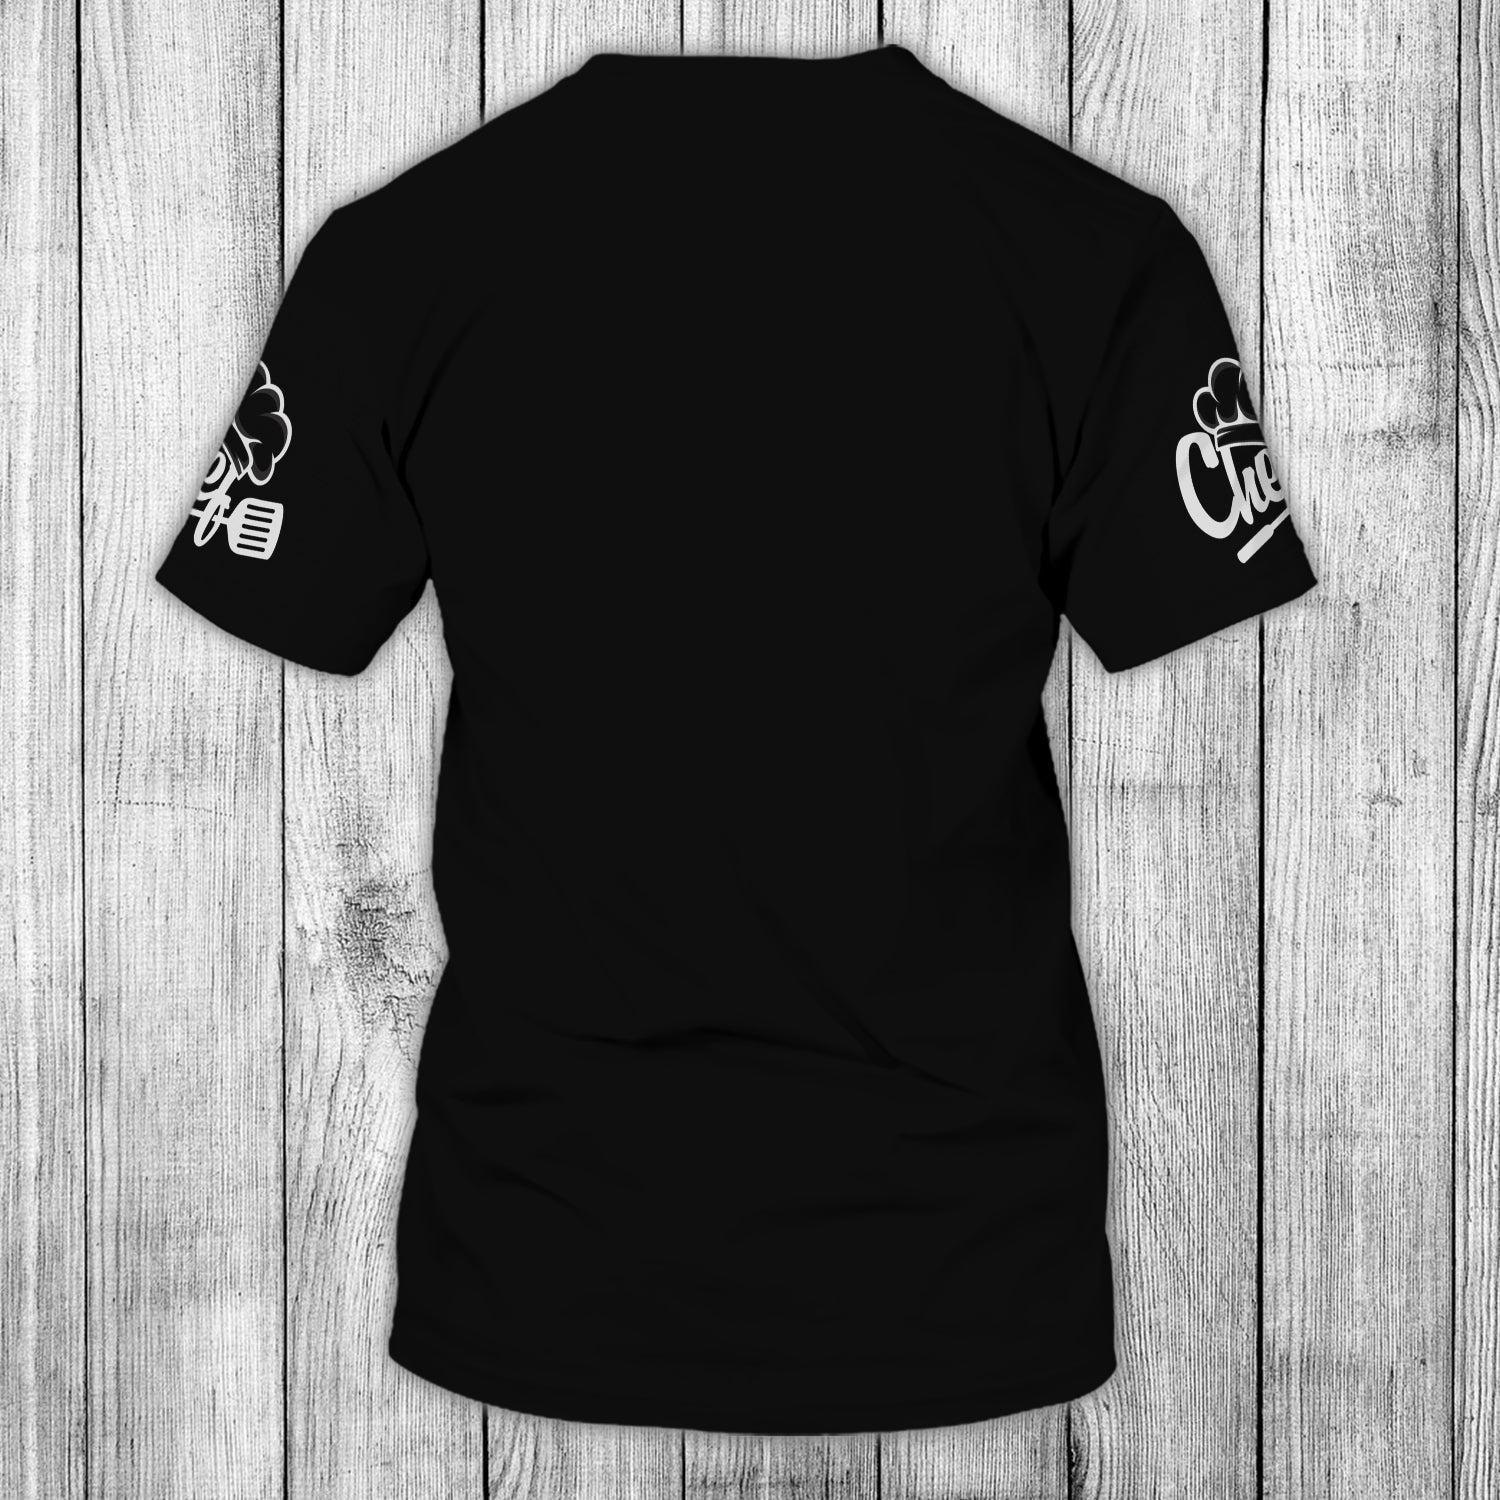 CHEF - Personalized Name 3D Tshirt 04 - RINC98 - HKM